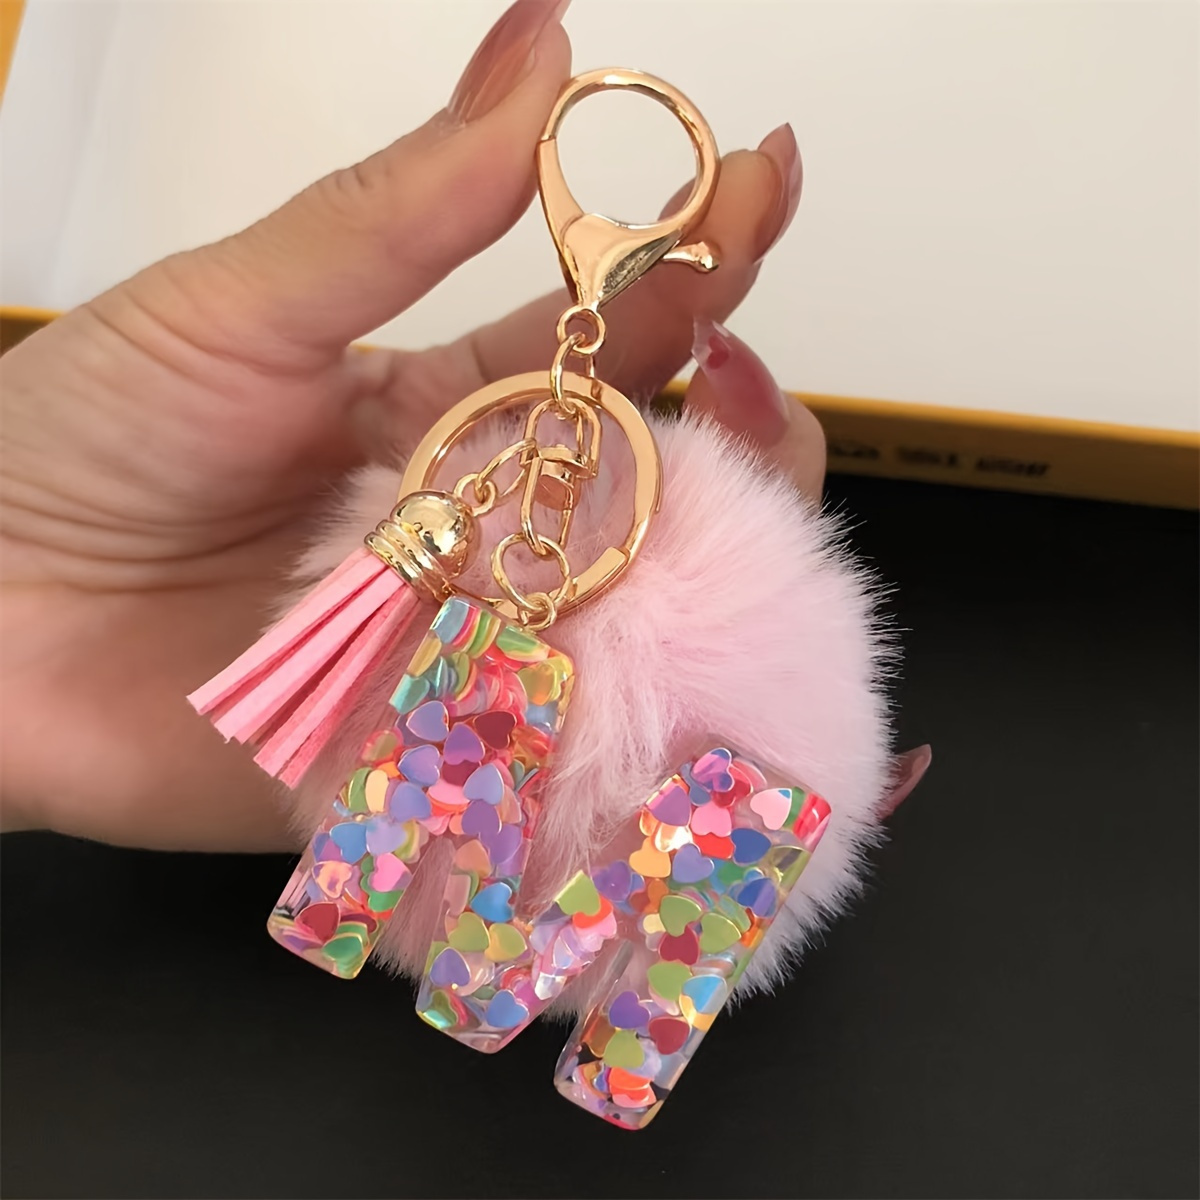 Buy Colored Pom Pom Keychain Bulk Heart Fluffy Fur Puff Ball Key